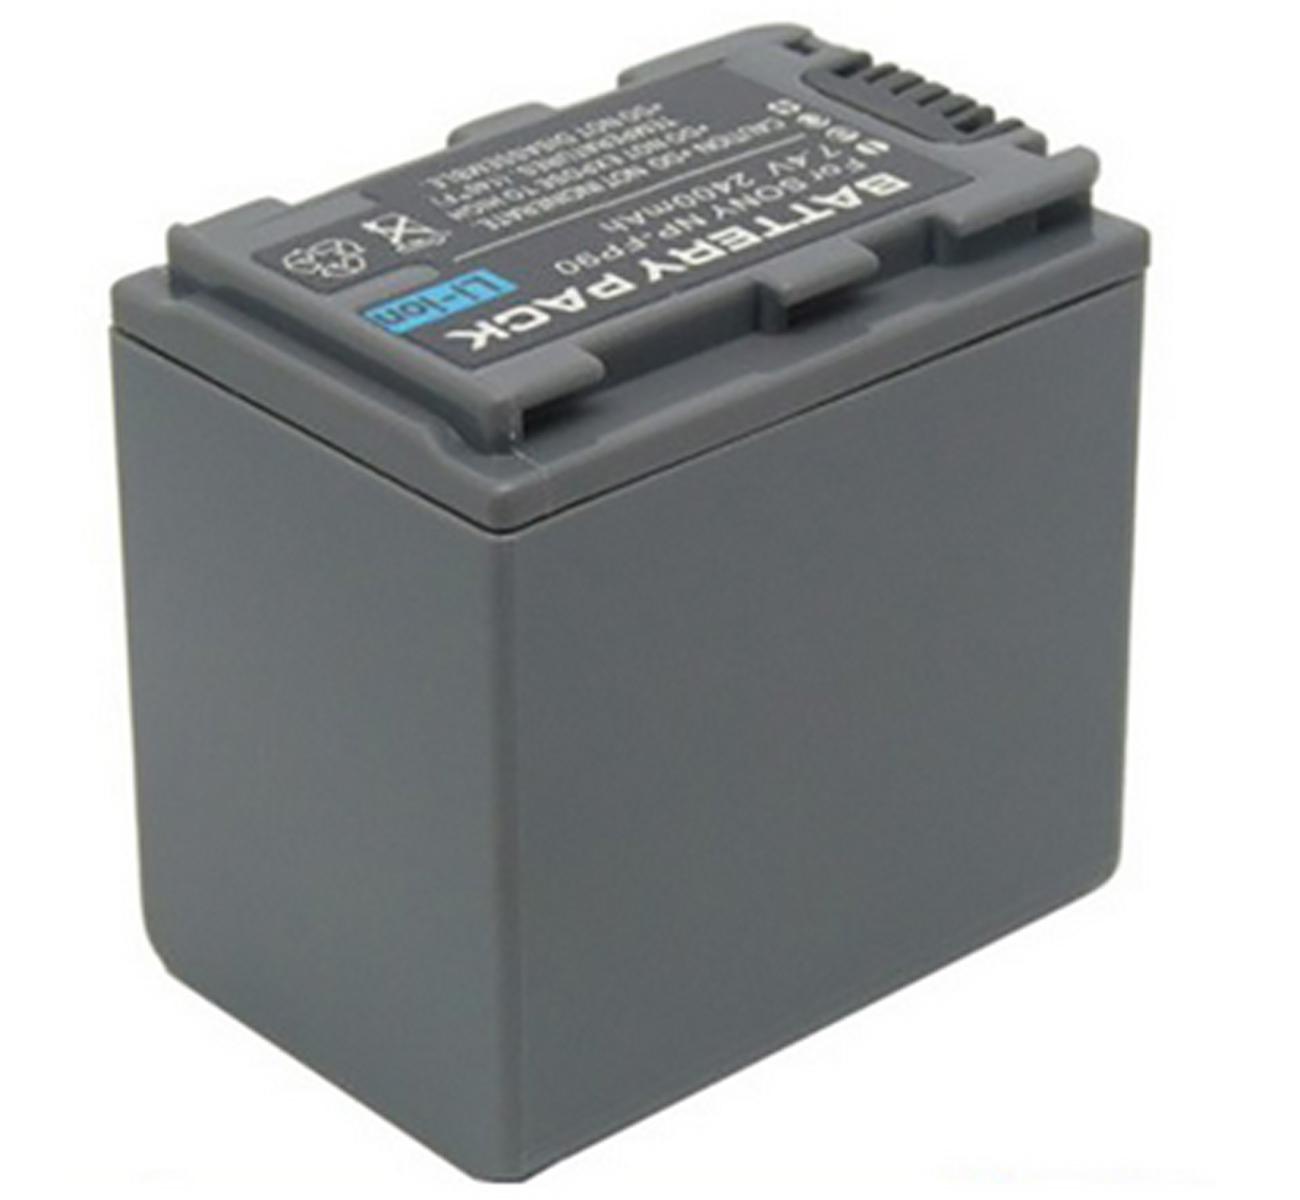 Изображение товара: Аккумулятор для Sony DCR-HC20, DCR-HC21, DCR-HC22, DCR-HC23, DCR-HC24, DCR-HC26, DCR-HC27, DCR-HC28 Handycam Camcorder